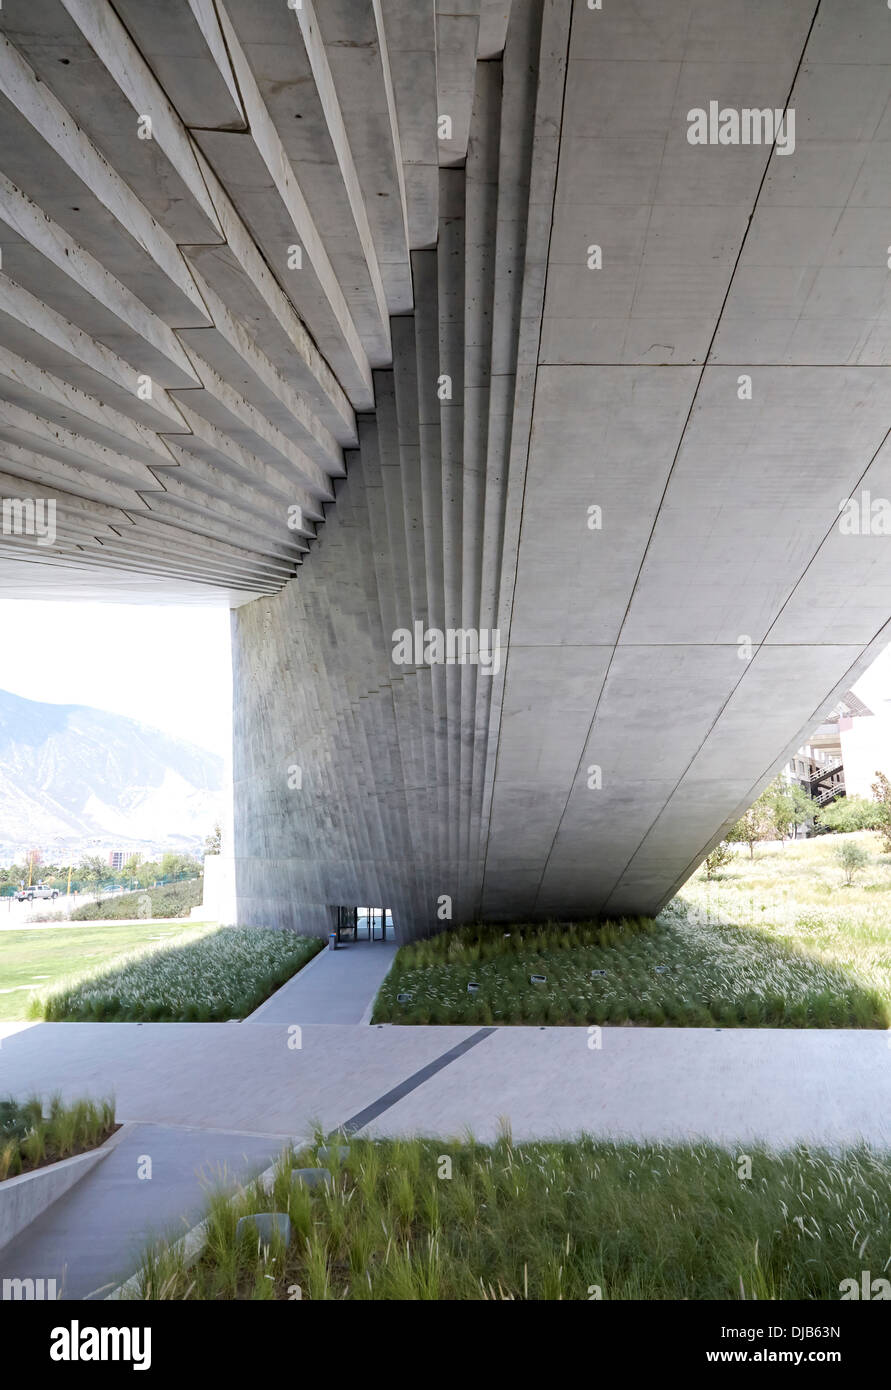 La Universidad de Monterrey (UDEM) Roberto Garza Sada-Centro de Arte Arquitectura y Diseno, Monterrey, Mexique. Architecte : Tadao Banque D'Images